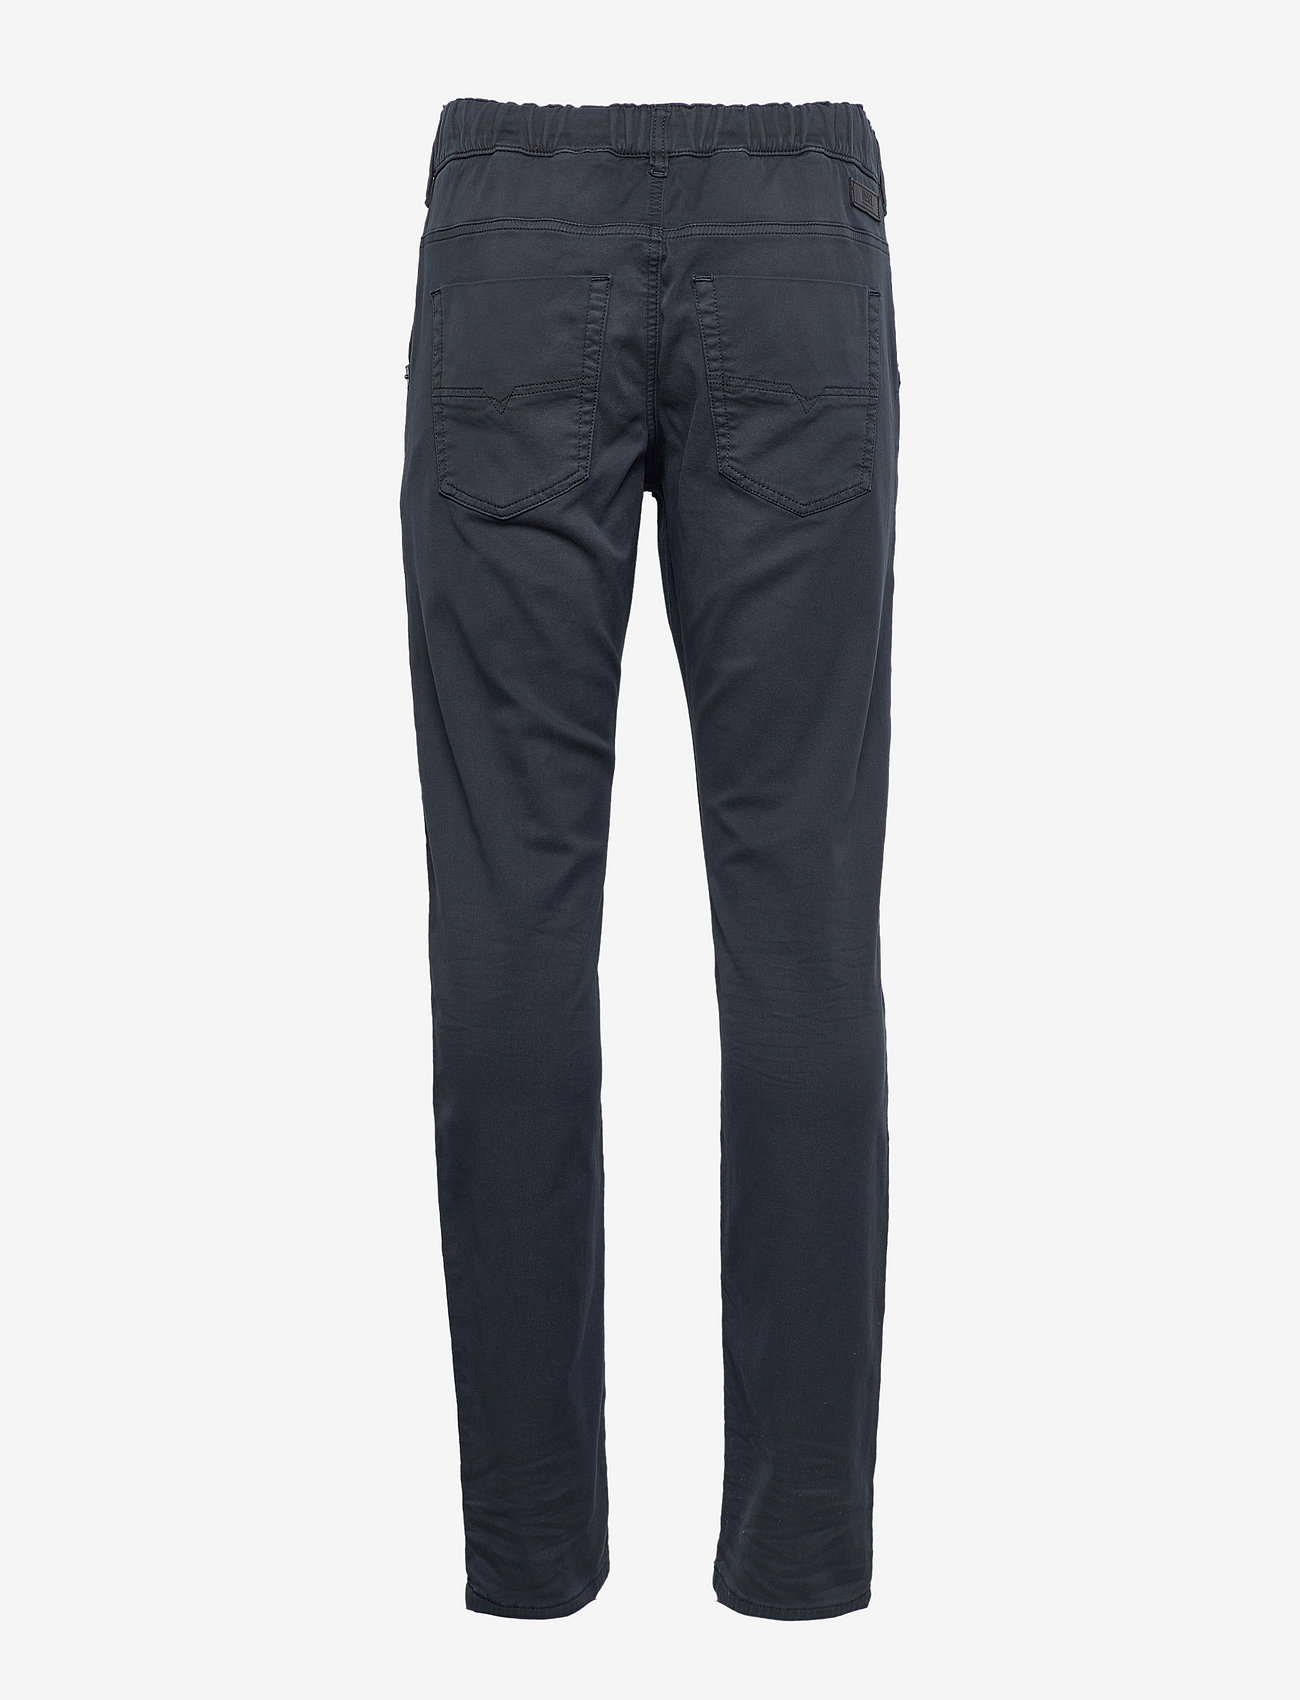 Diesel - KROOLEY-E-NE Sweat jeans - tapered jeans - dark/blue - 1